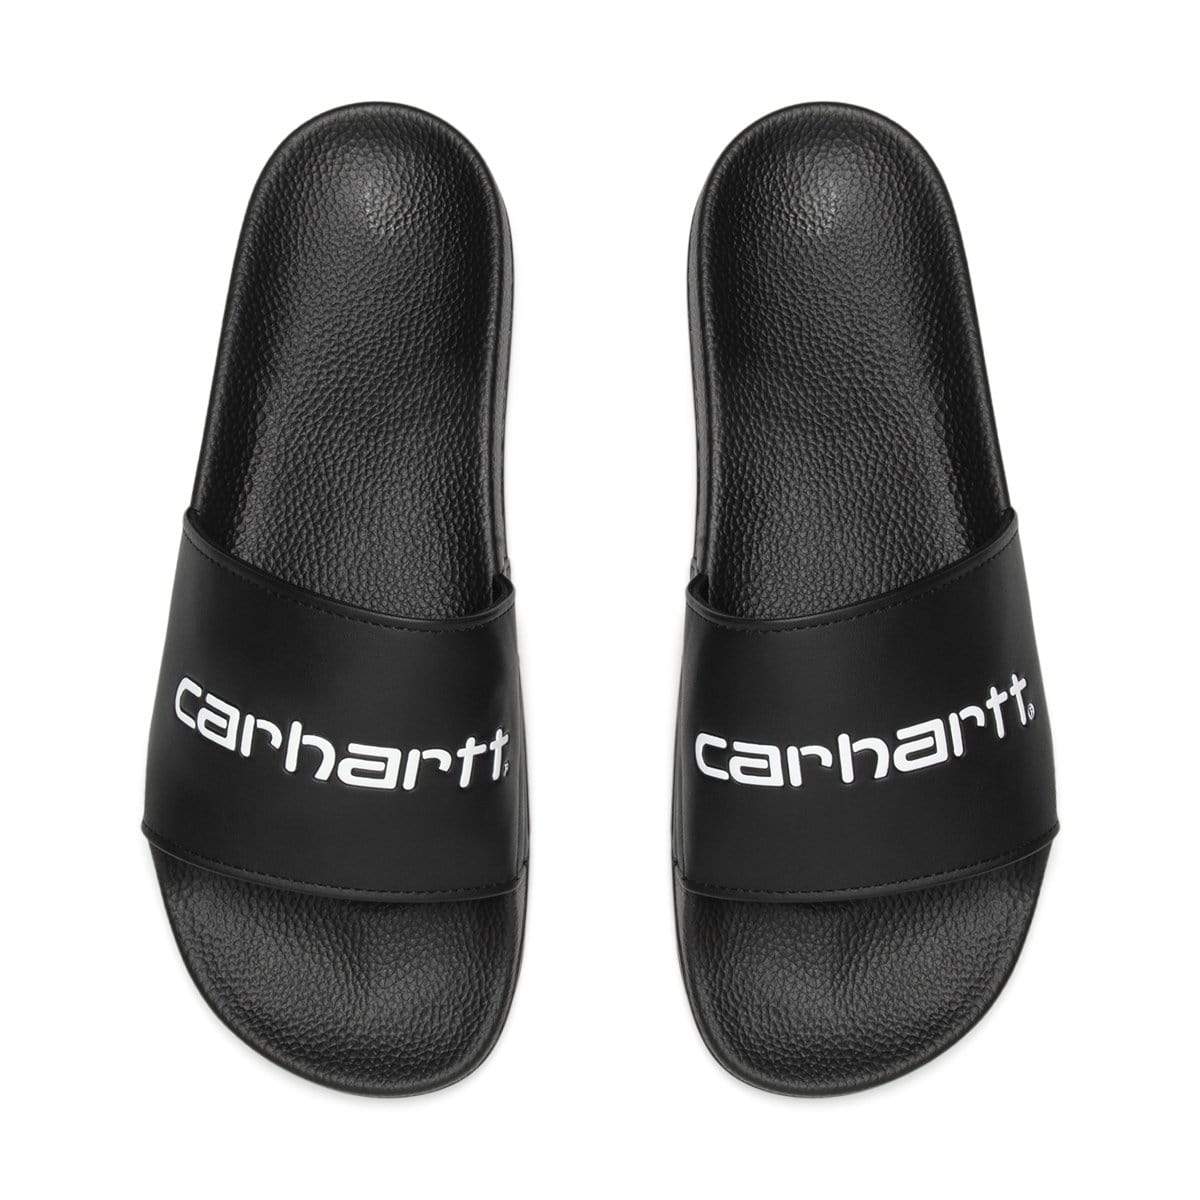 Carhartt W.I.P. Sandals CARHARTT WIP SLIPPER